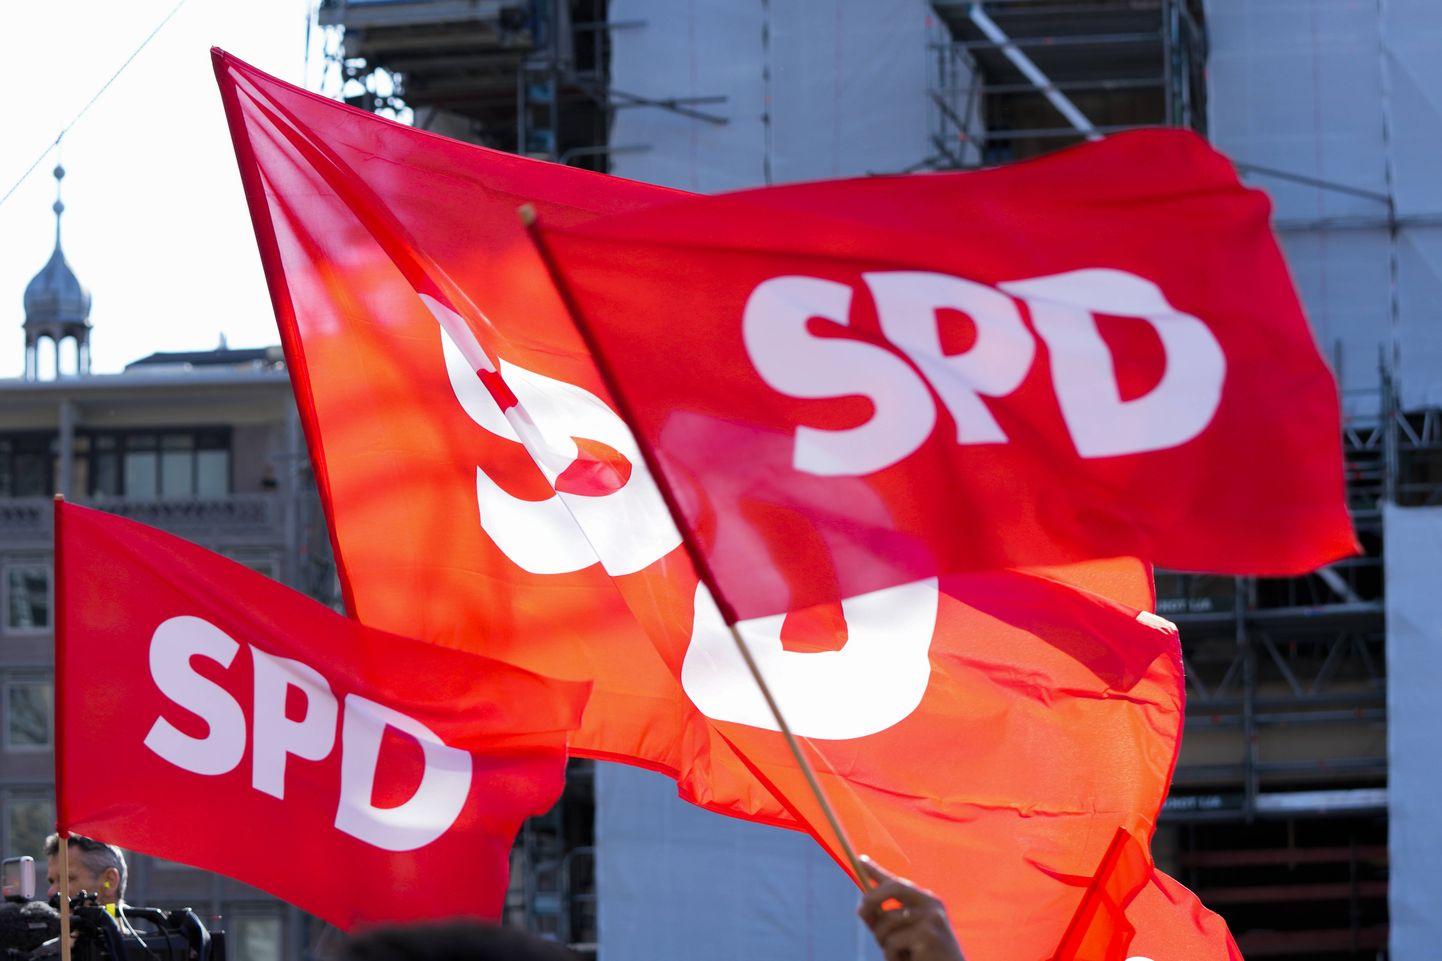 Saksamaa sotsiaaldemokraatliku partei (SPD) lipud.